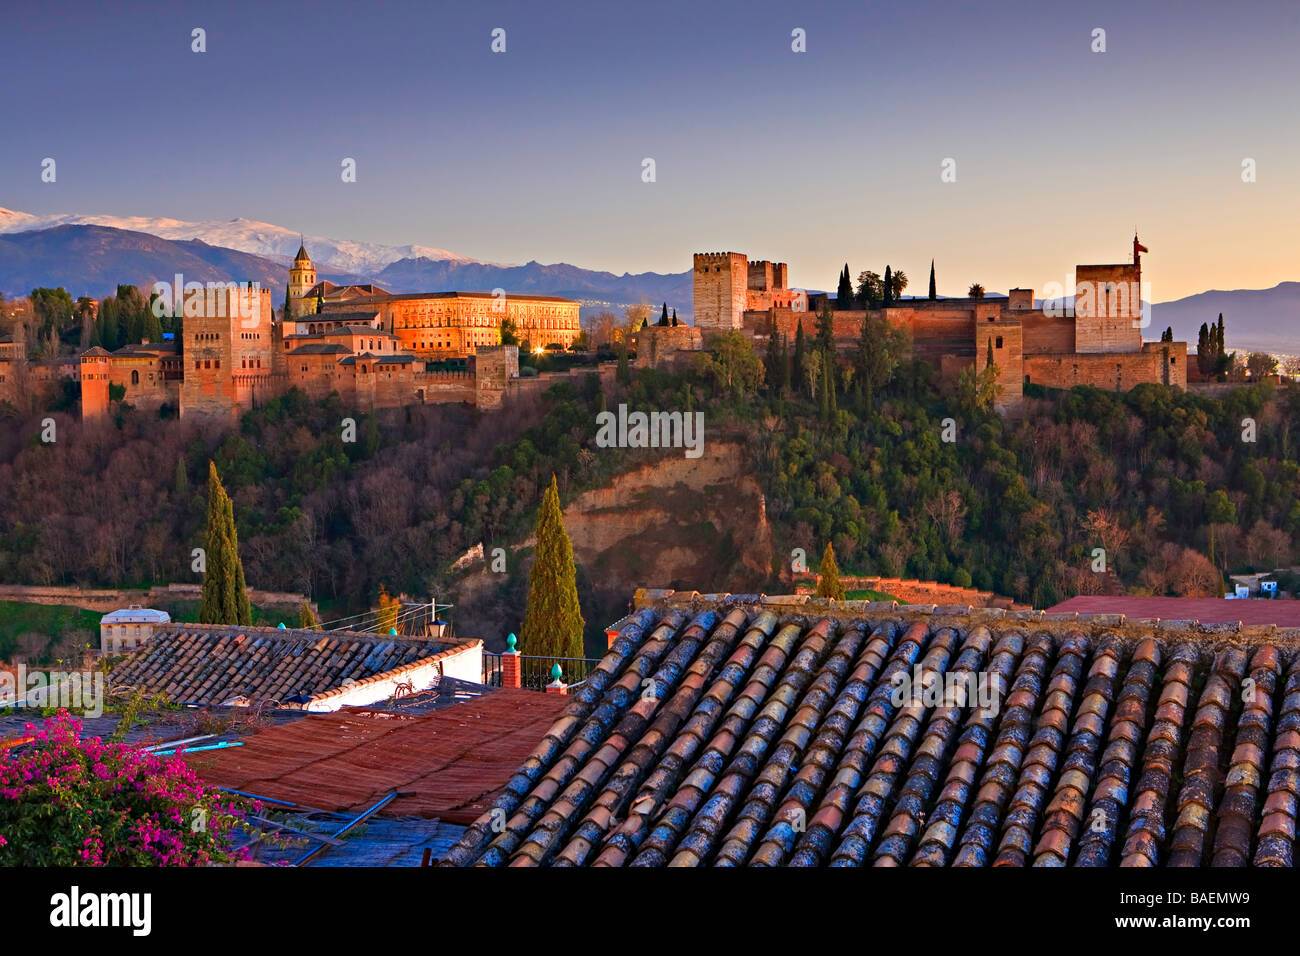 L'Alhambra (Alhambra) une citadelle mauresque et palace désigné Site du patrimoine mondial de l'UNESCO en 1984. Banque D'Images